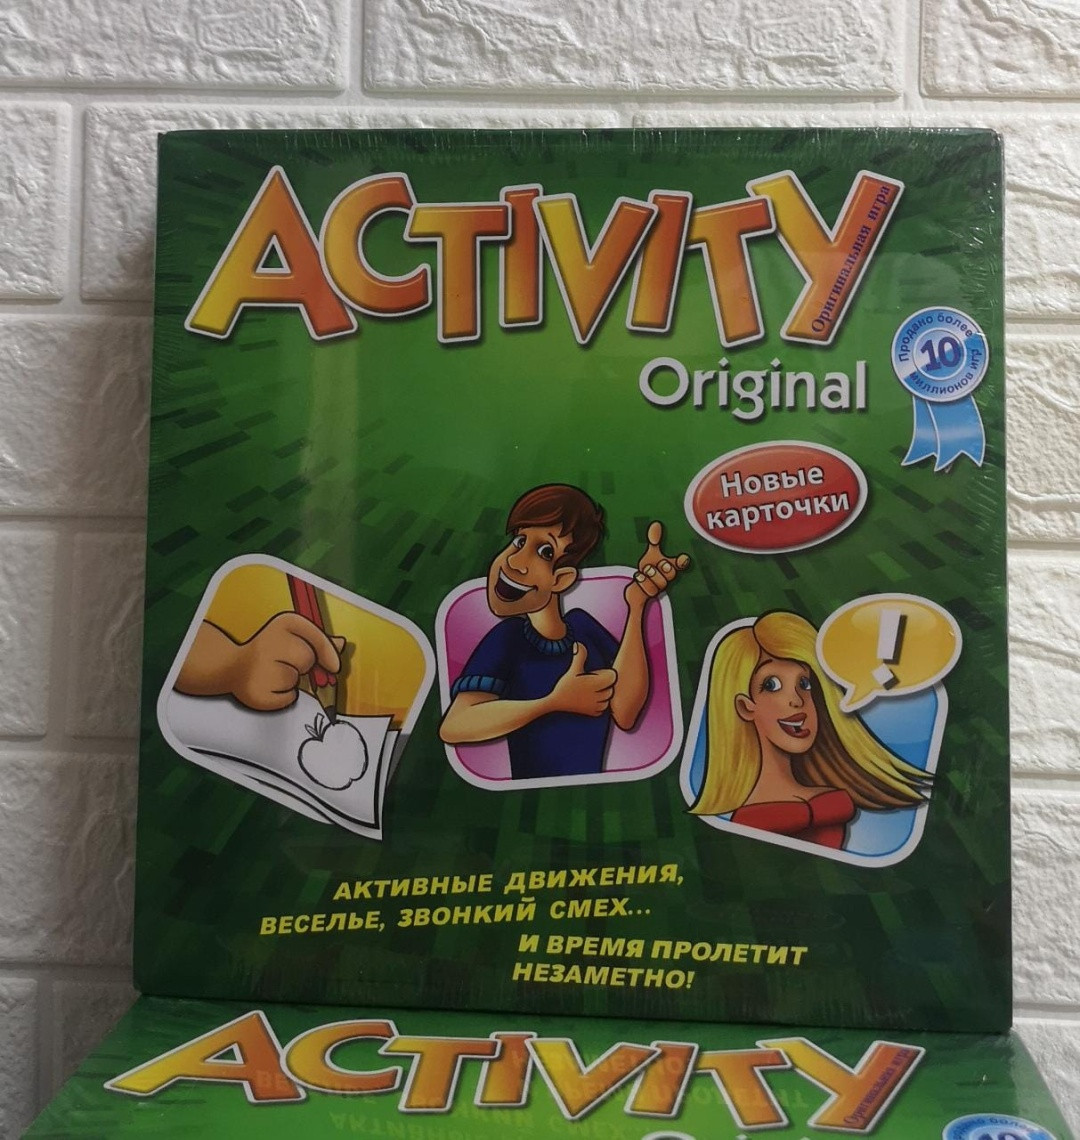 Активити игра настольная для детей и взрослых с новыми карточками, 27 х 27,5 х 5 см, 0134R-36 м